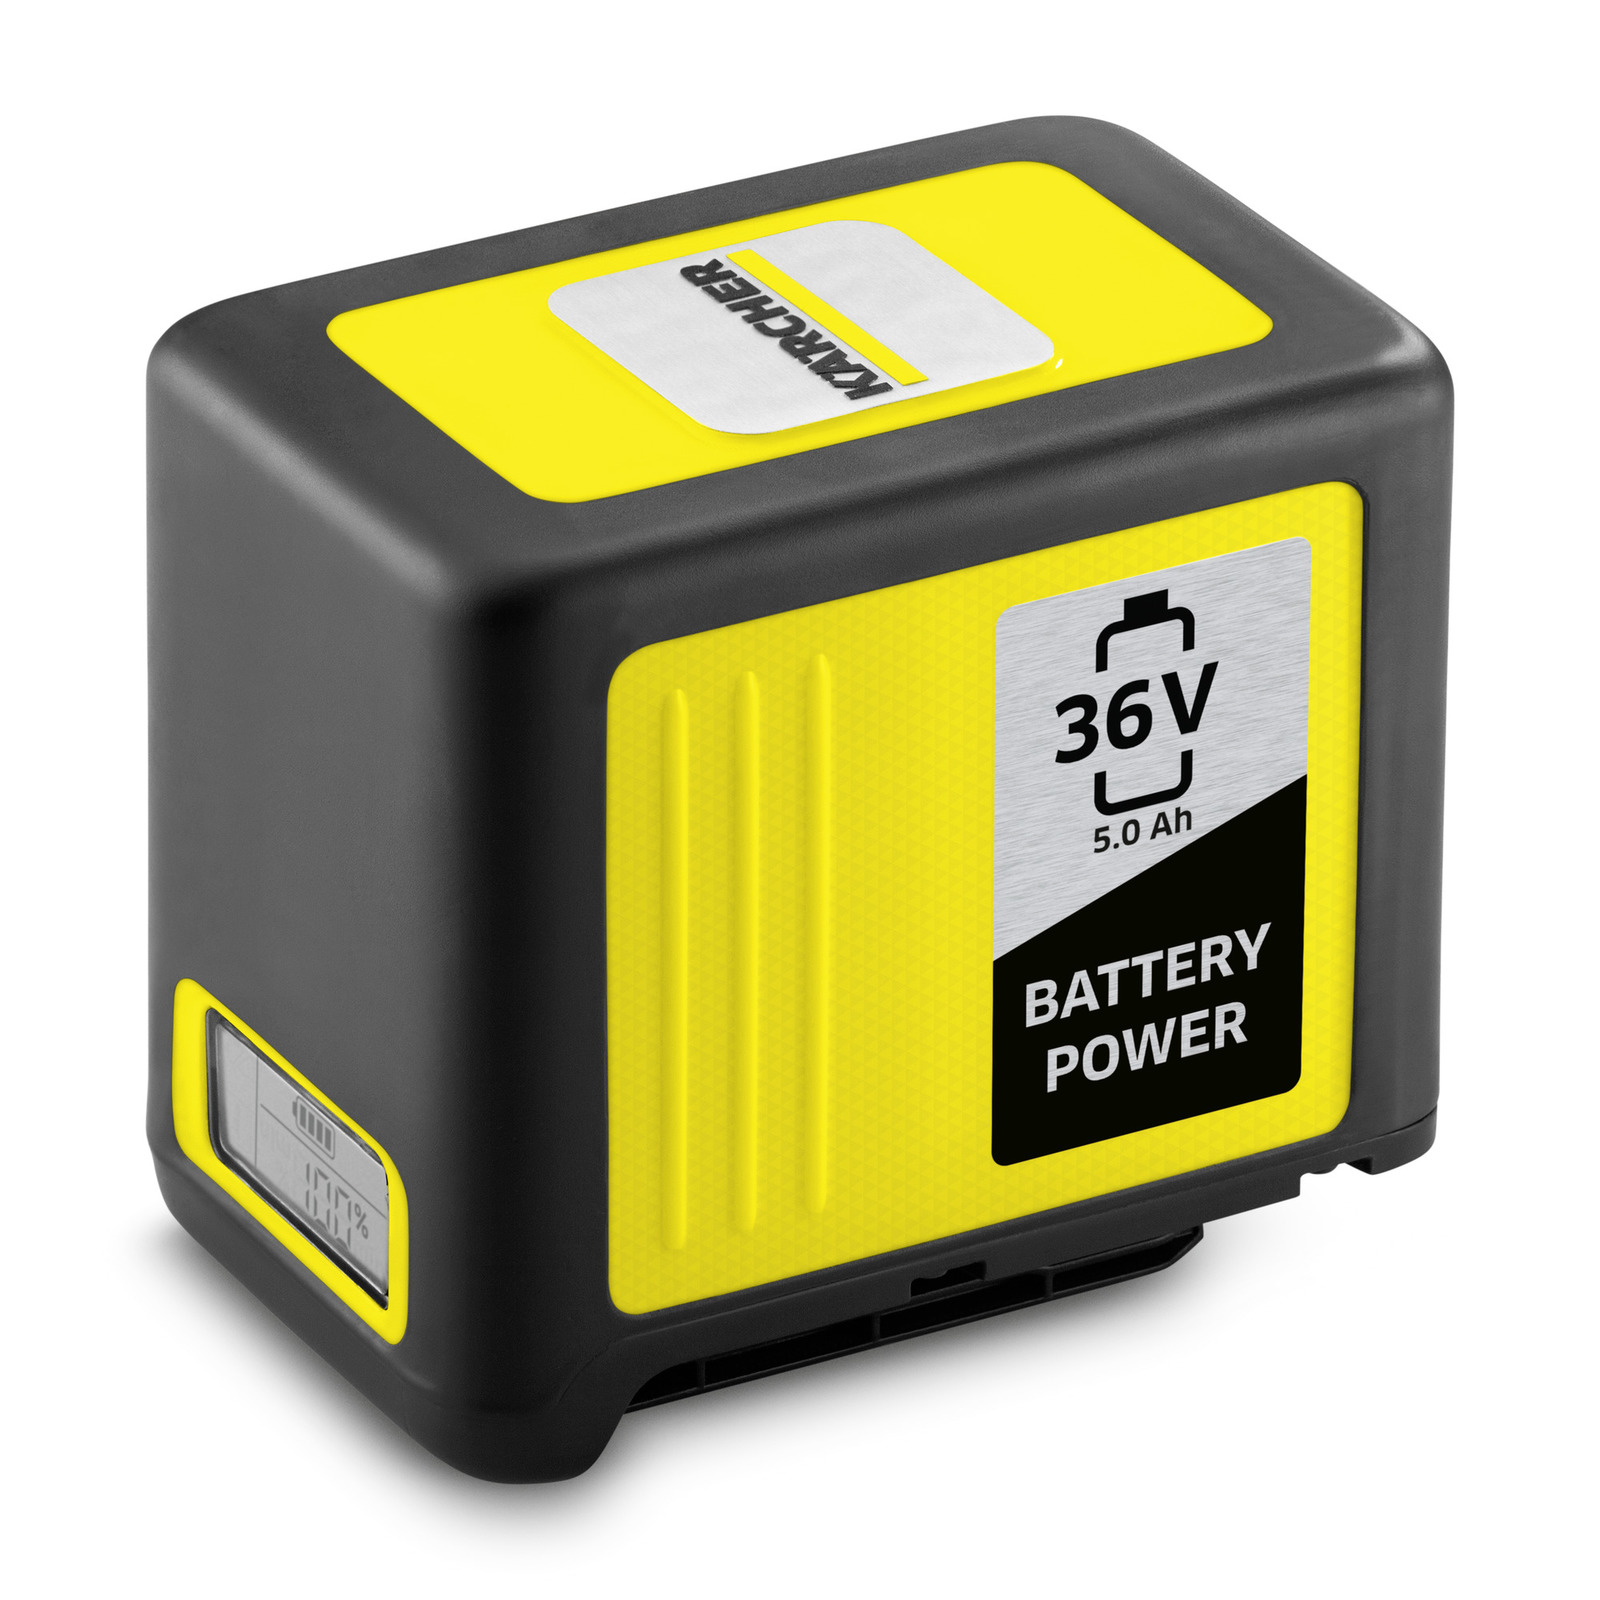 バッテリーパワー 36V5.0Ah - 家庭用アクセサリー | ケルヒャー